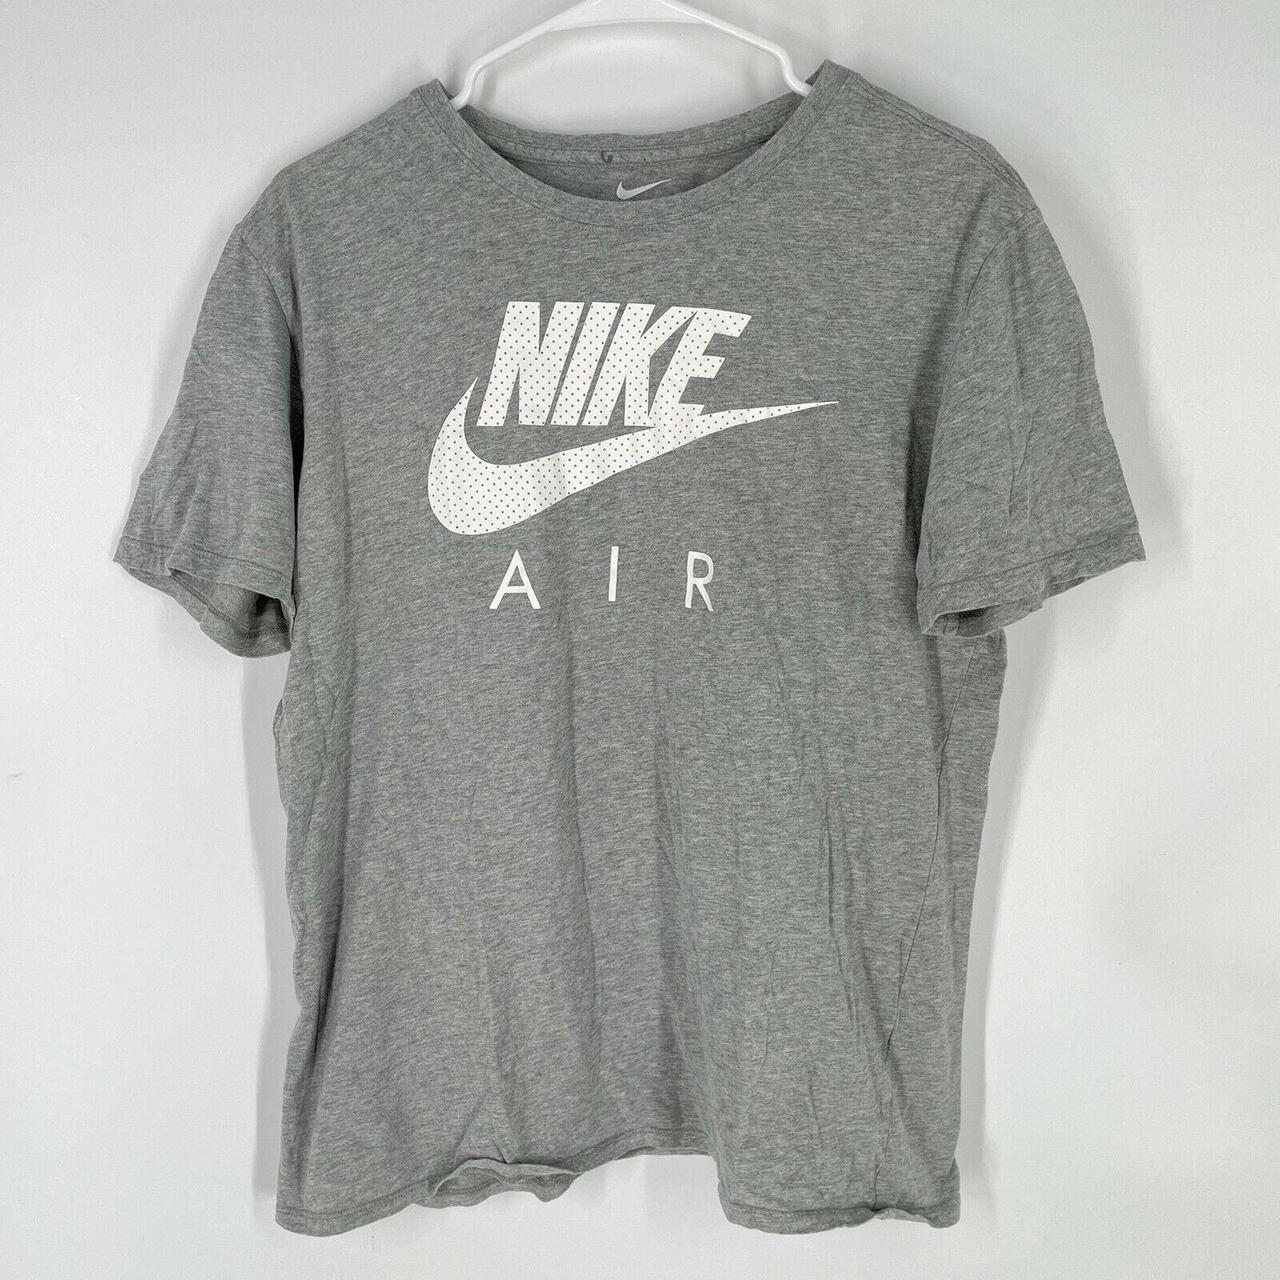 Nike Air Men’s The Nike Tee Short Sleeve Grey... - Depop